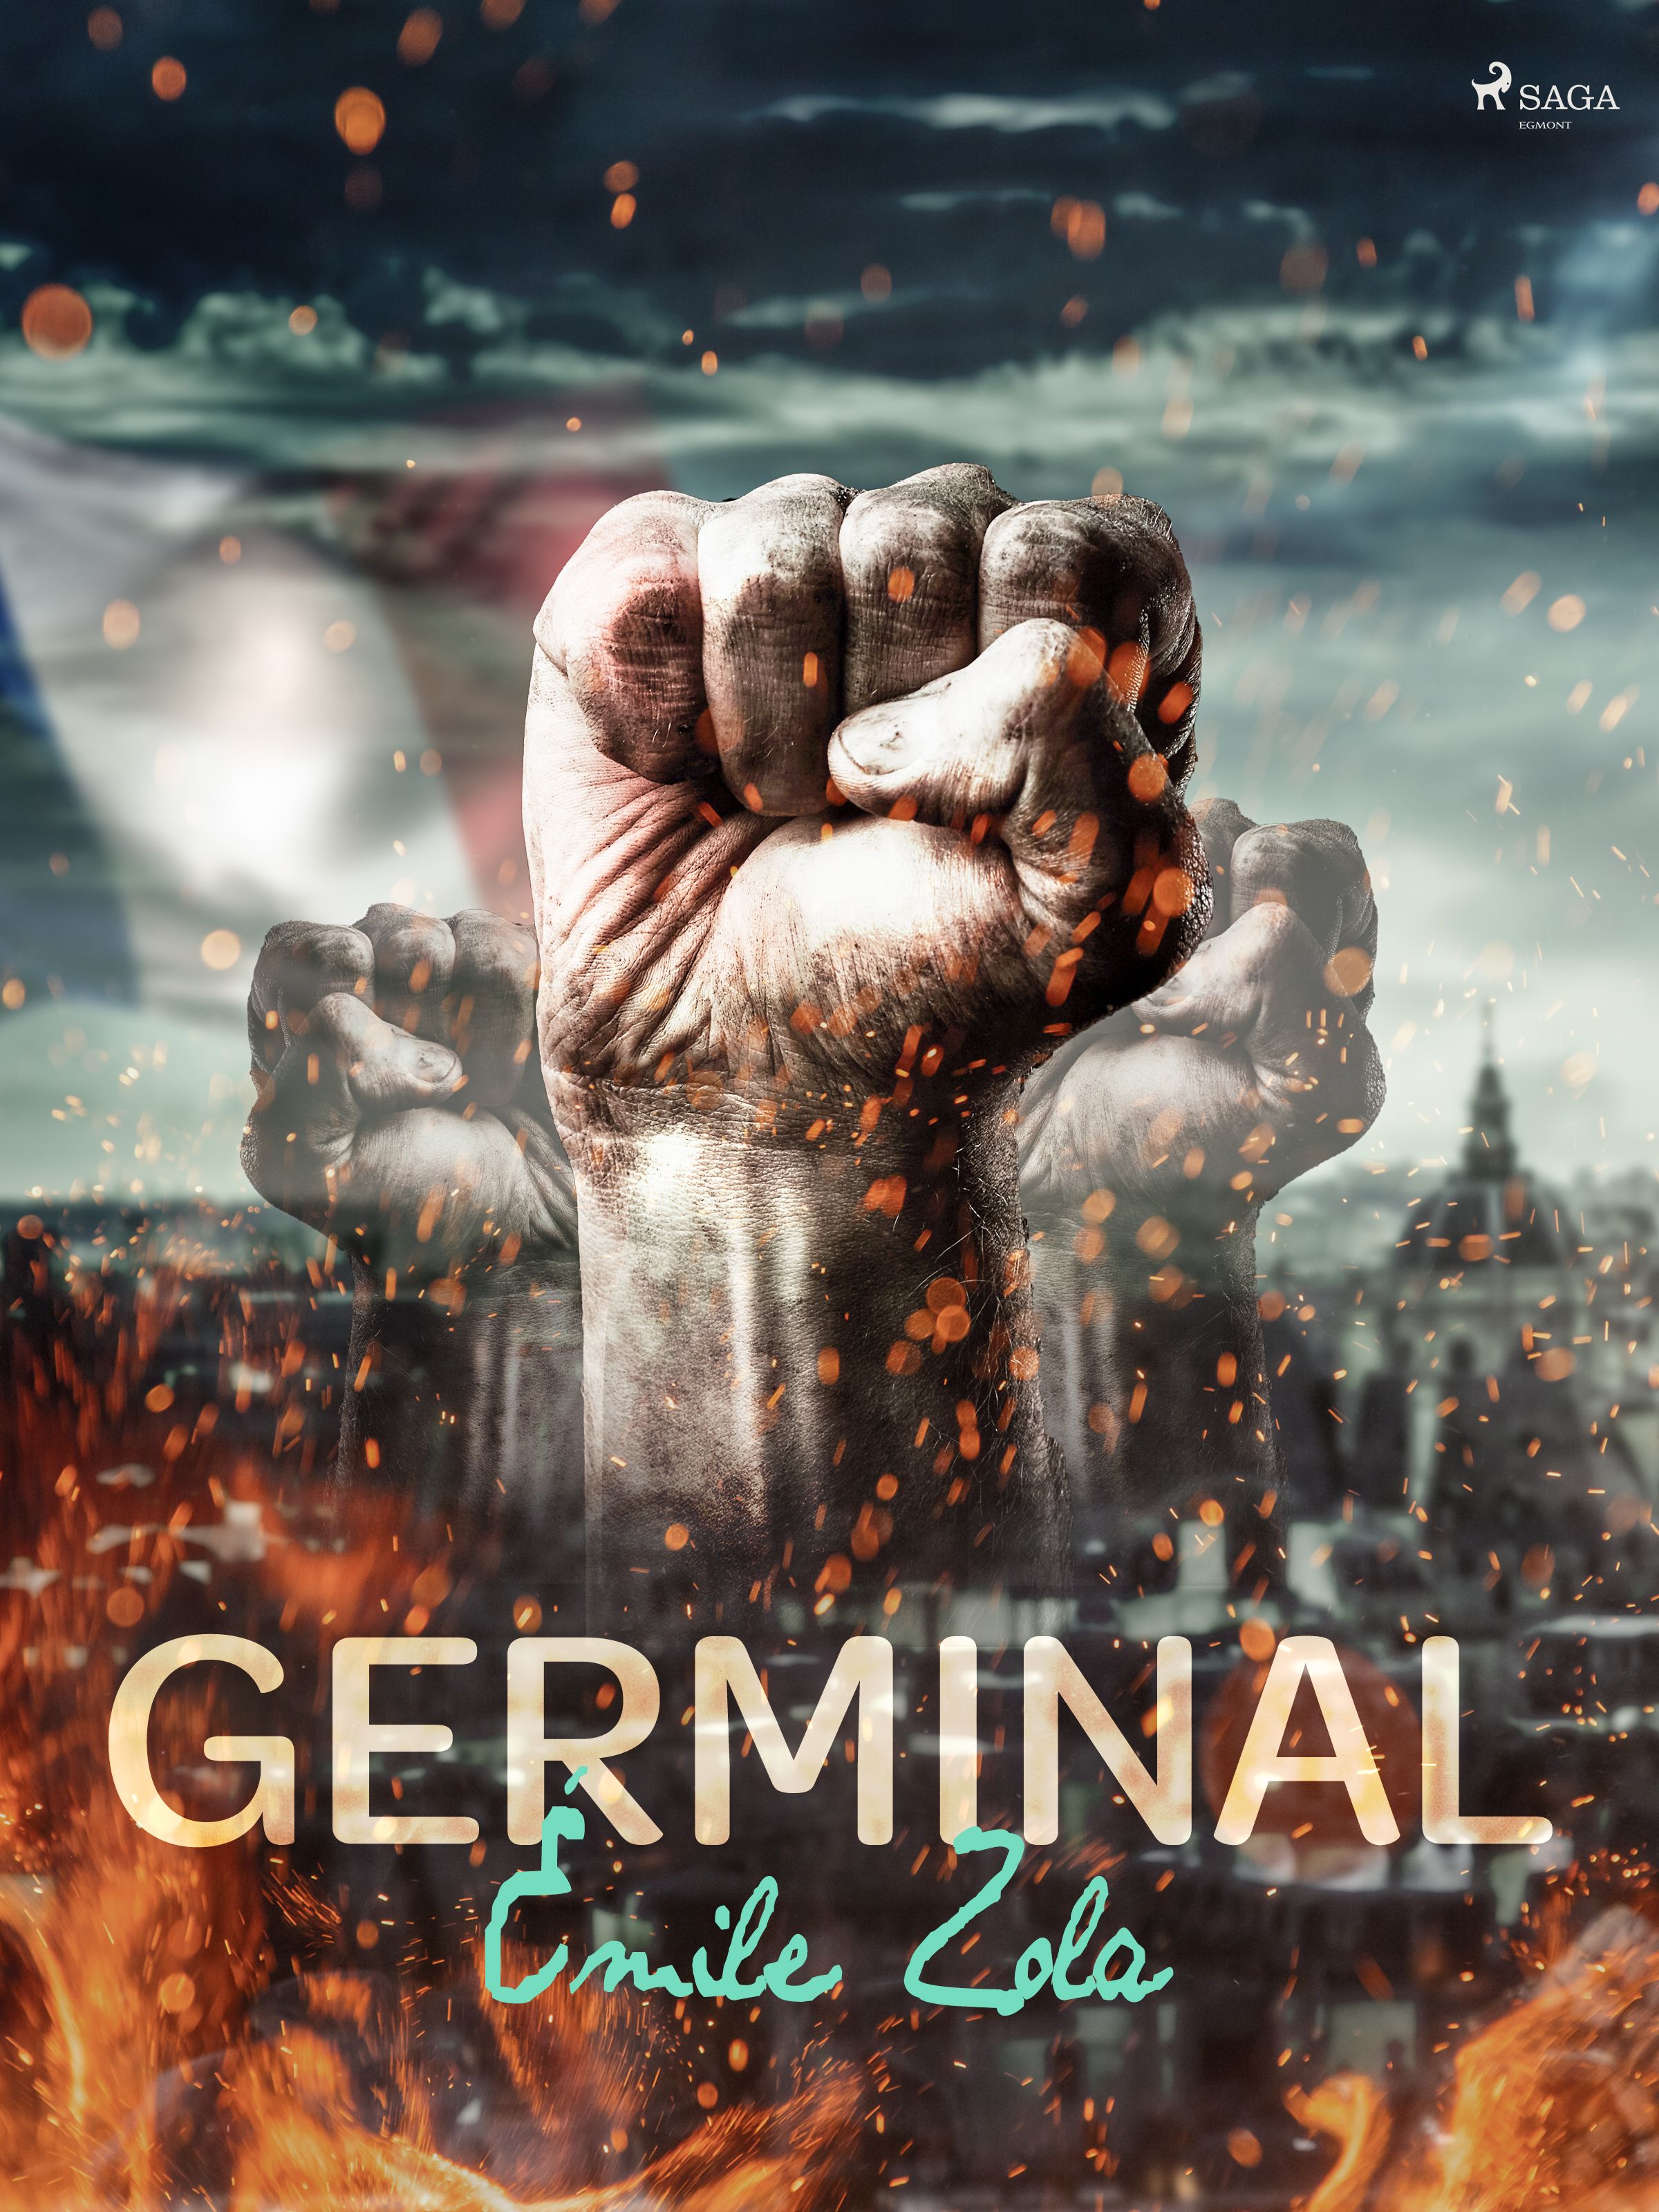 Germinal, eBook by Émile Zola